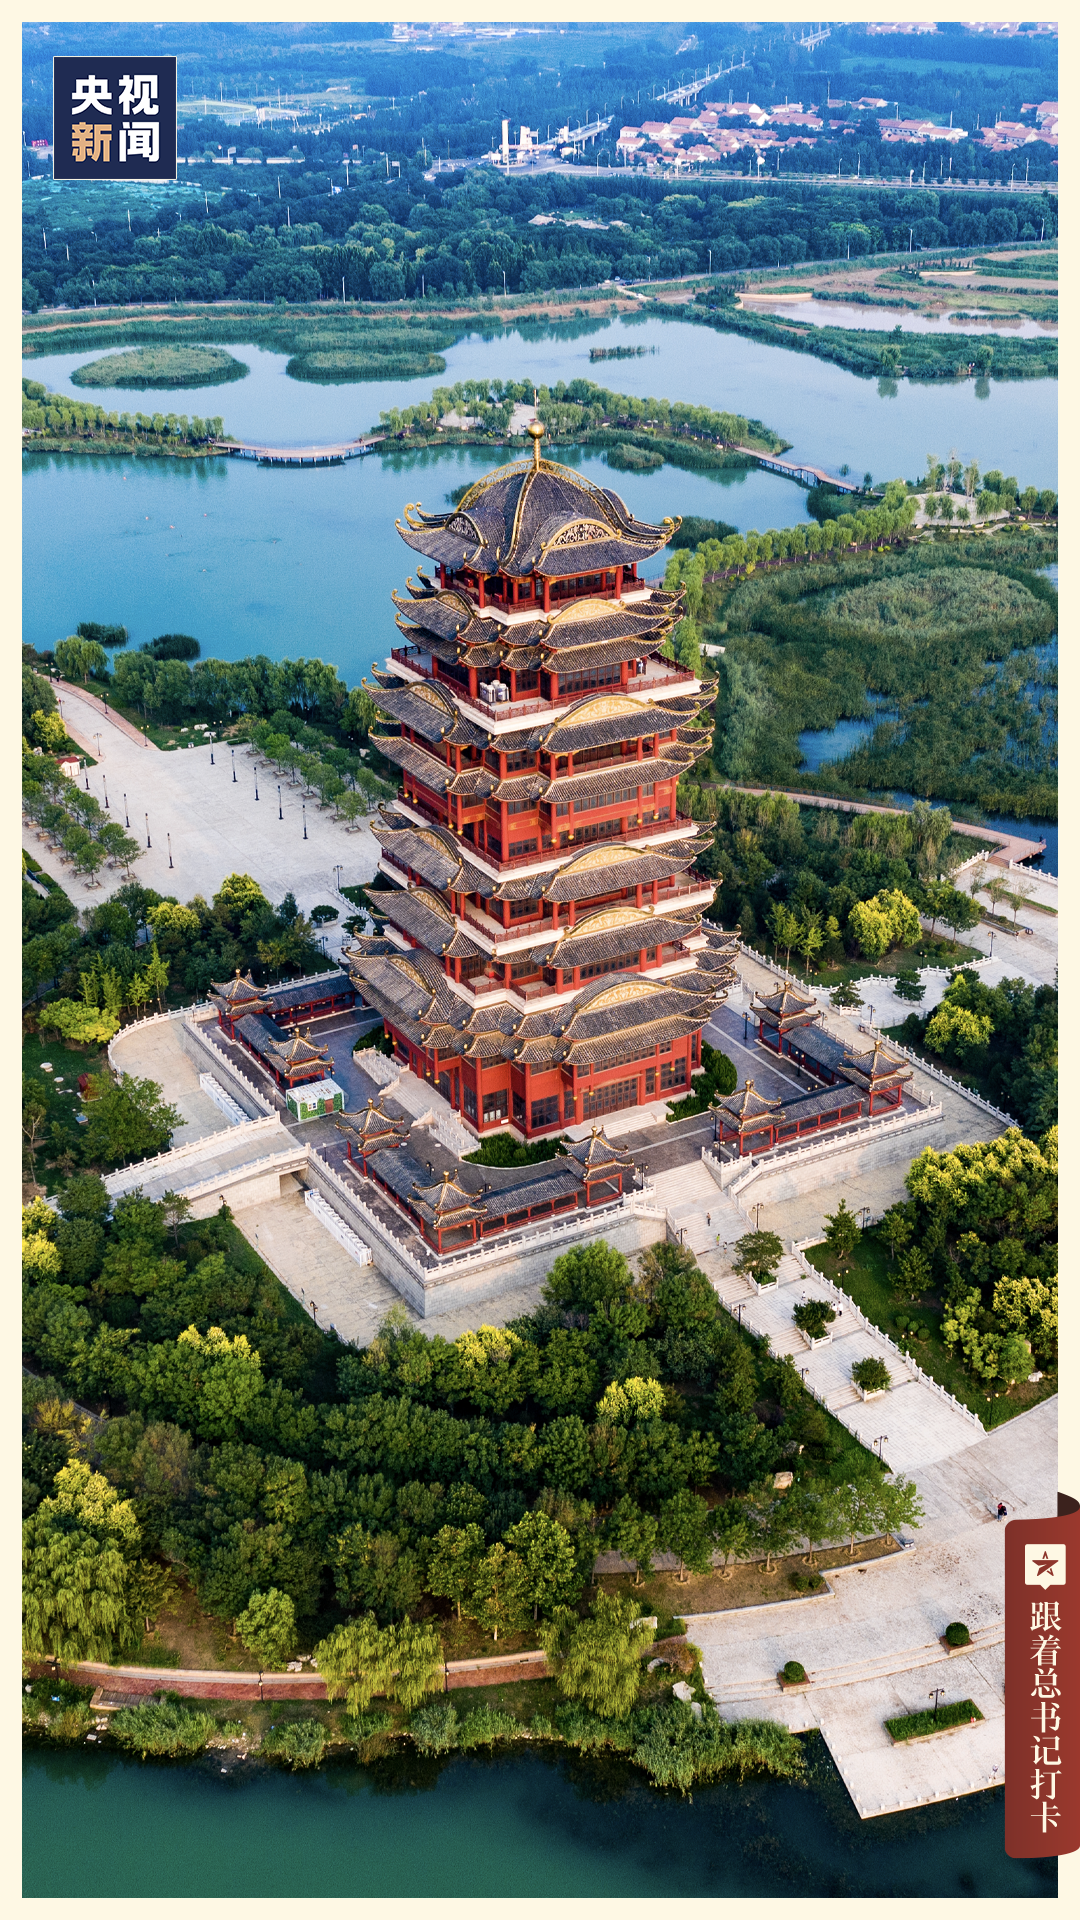 15 滨州聊城还有诸多非物质文化遗产,如传承悠久的东昌毛笔,临清贡砖